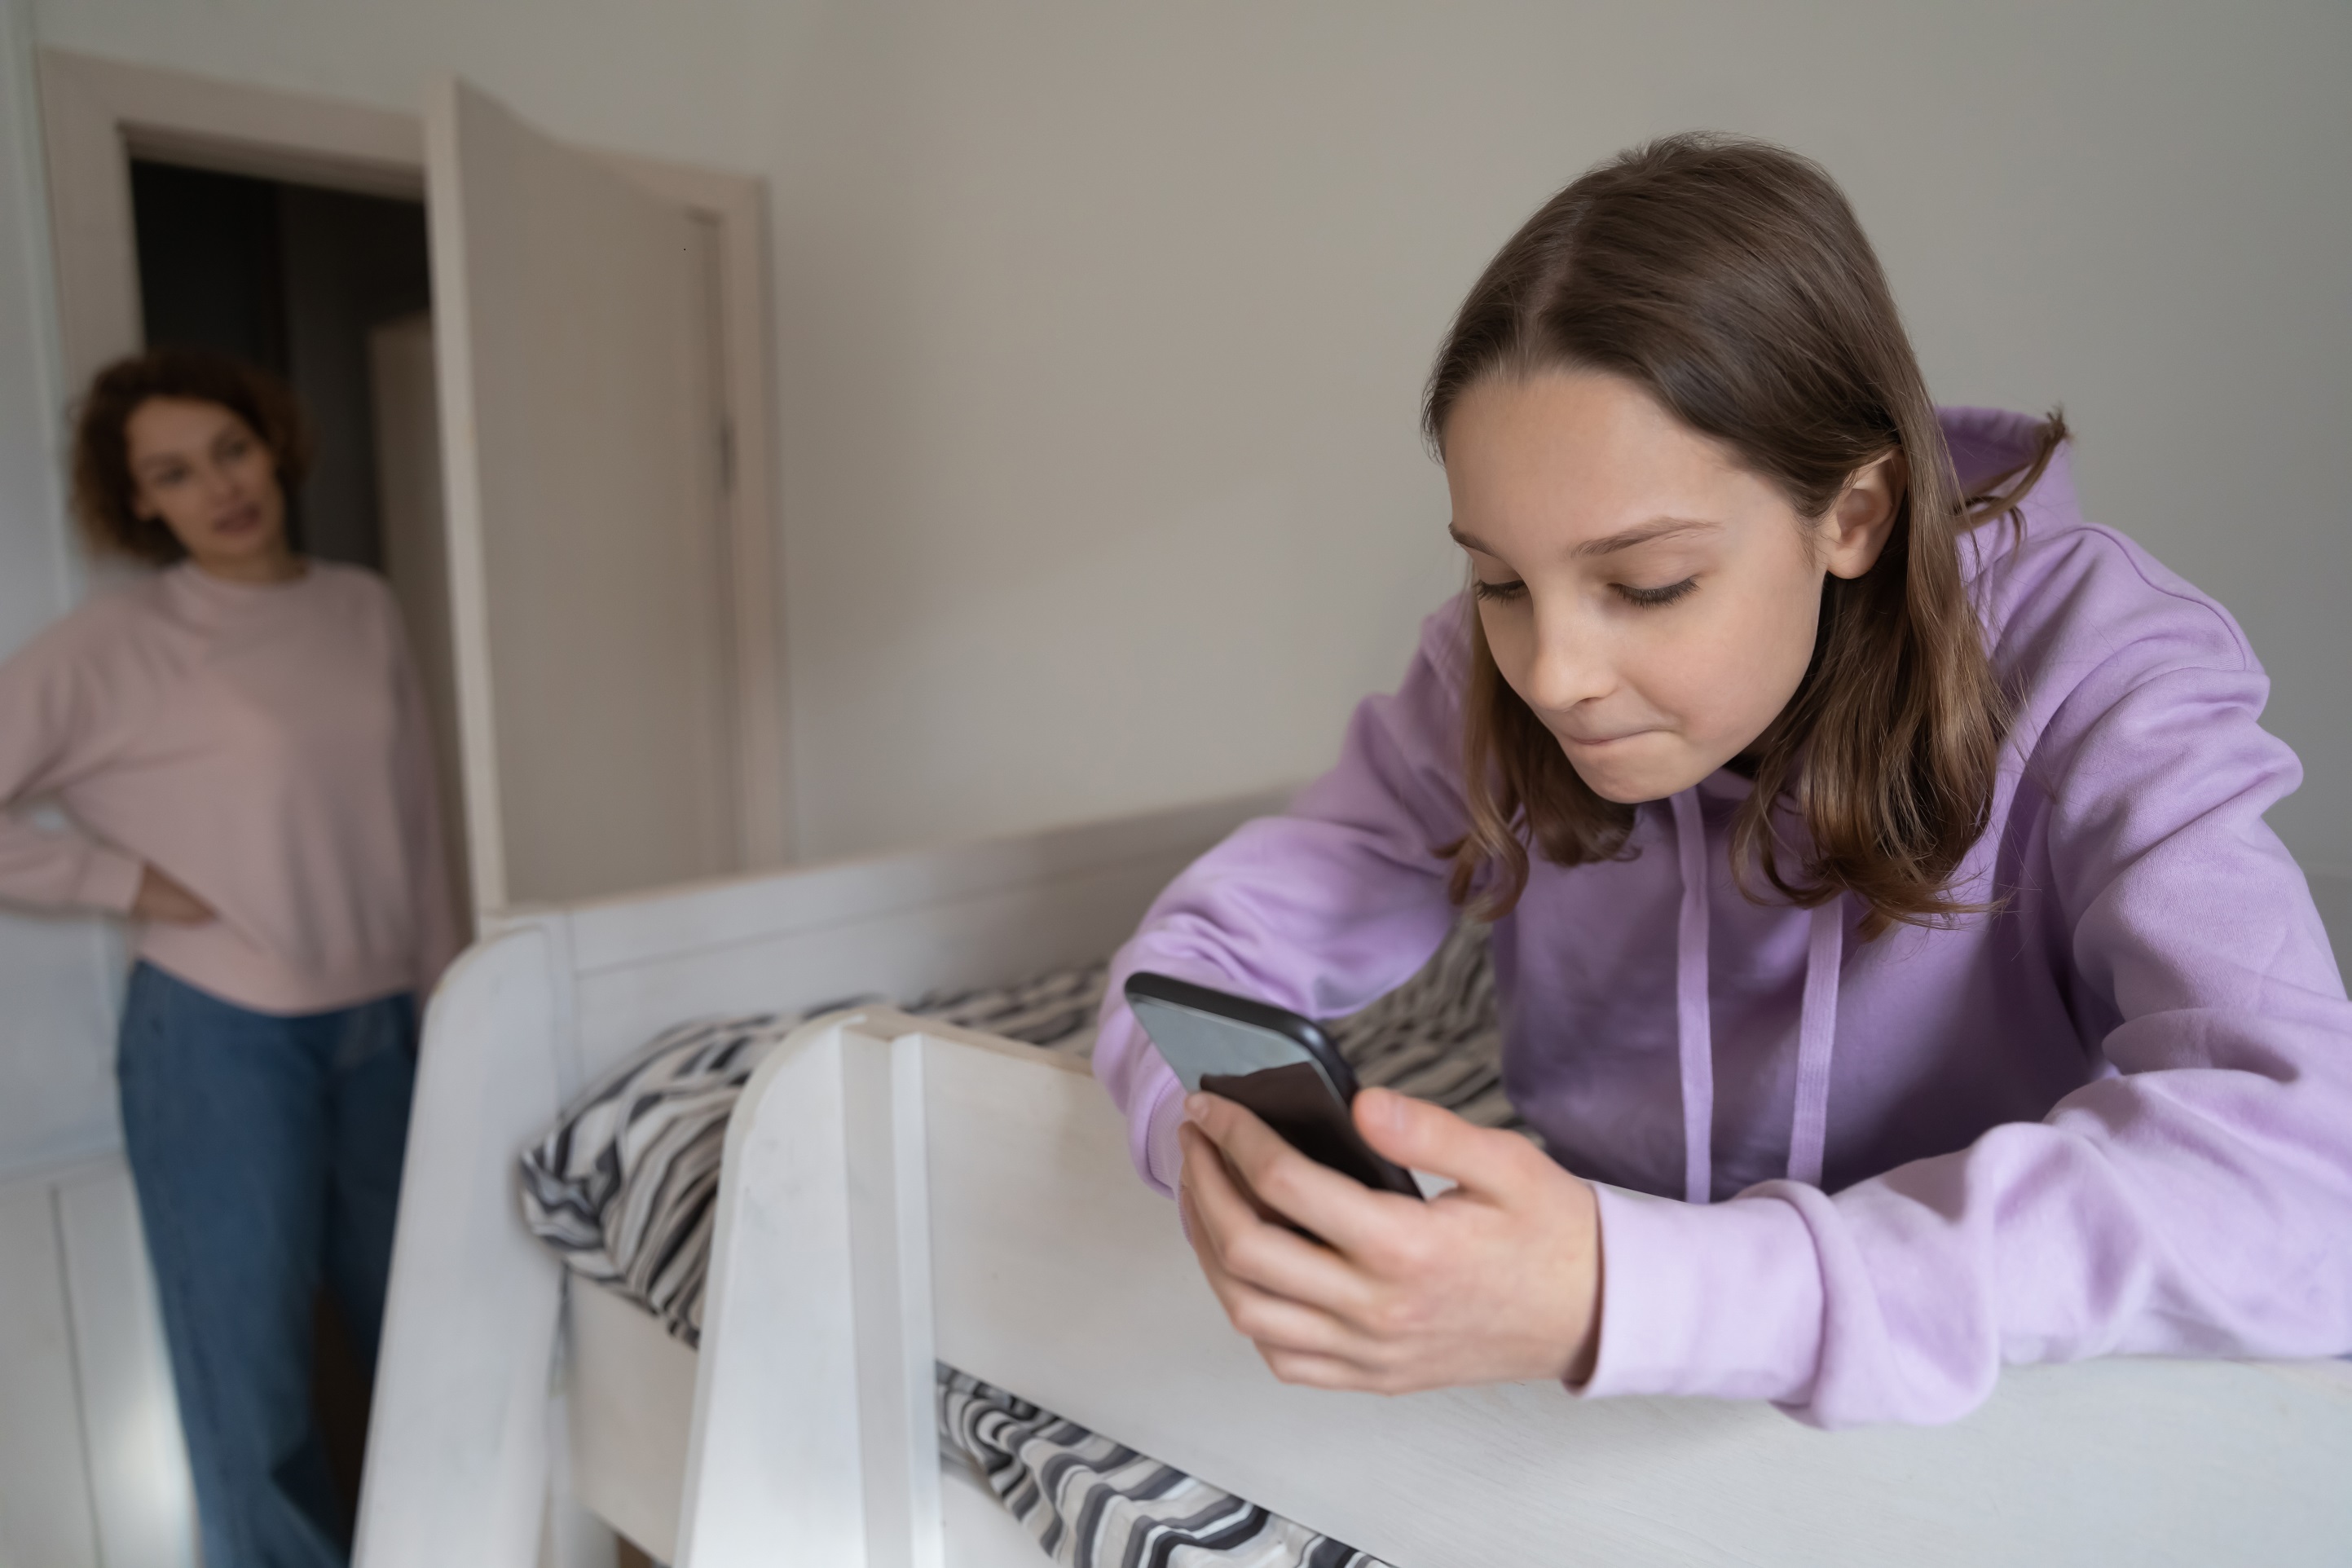 Pour gérer le temps passé sur les applications, certains réseaux sociaux proposent d'ores et déjà des outils aux parents. © fizkes, Getty Images